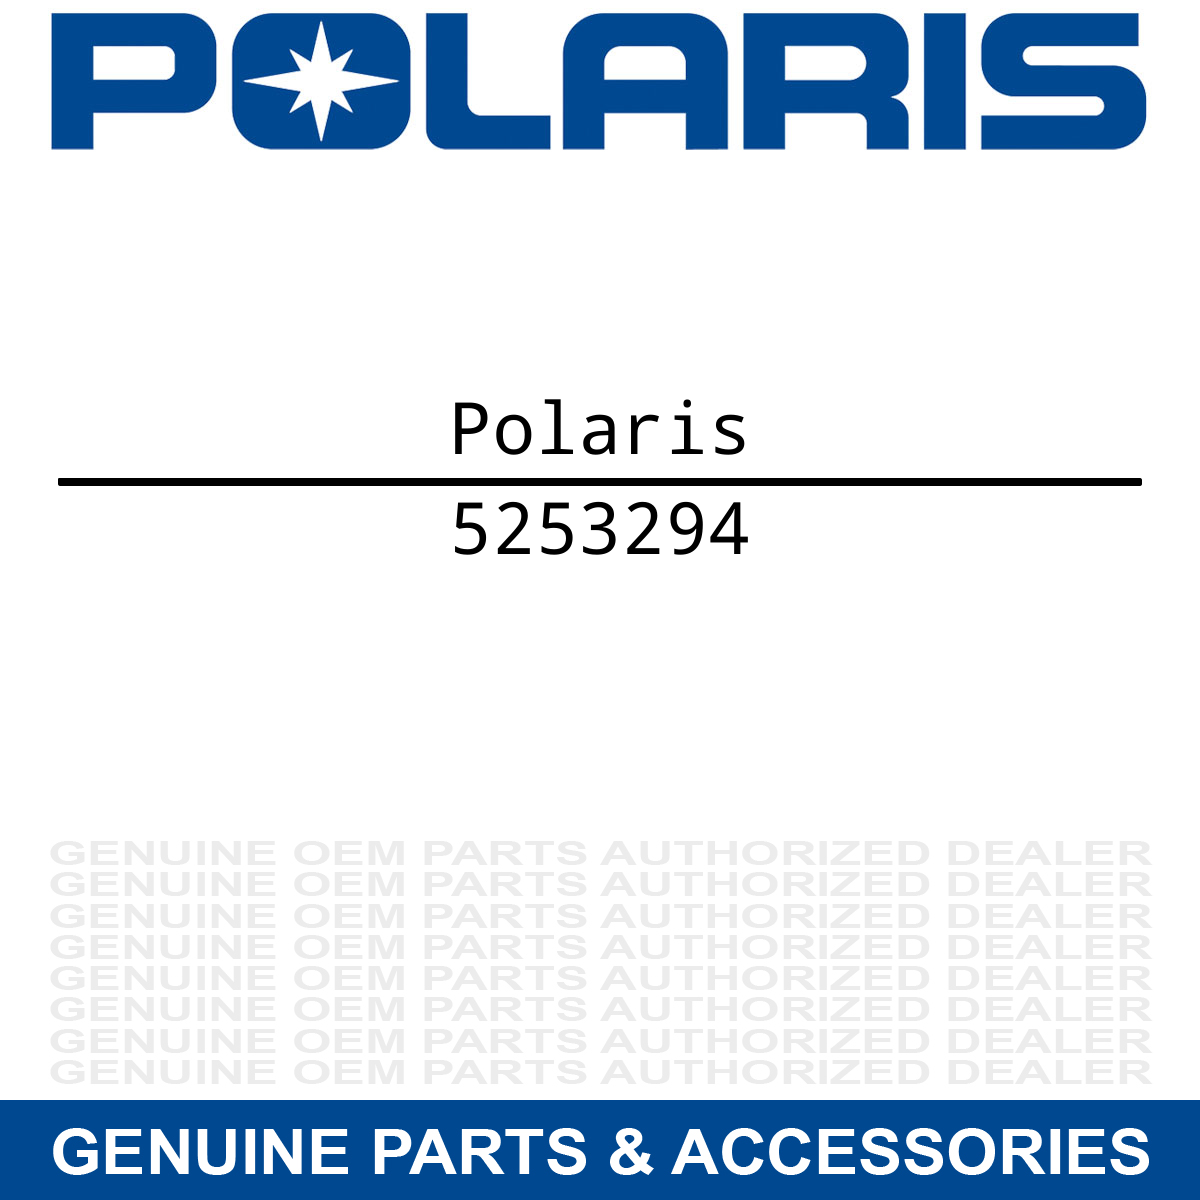 Polaris 5253294 Voltage Regulator Cover Sportsman 500 550 800 850